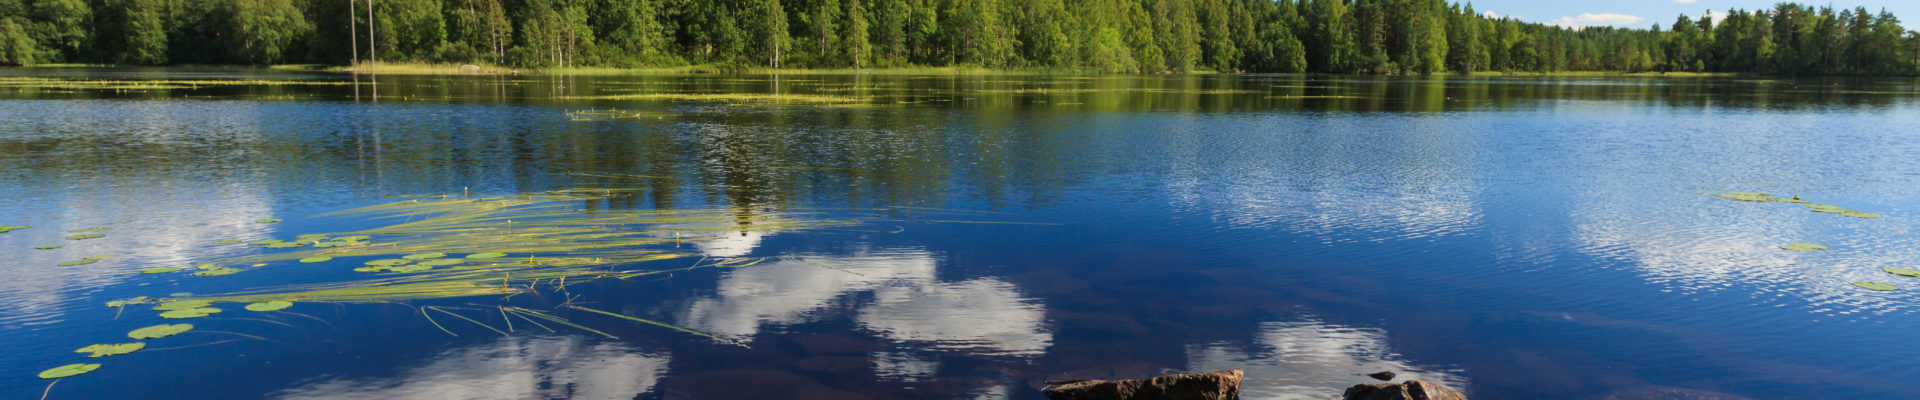 Kesäinen järvimaisema Suomesta